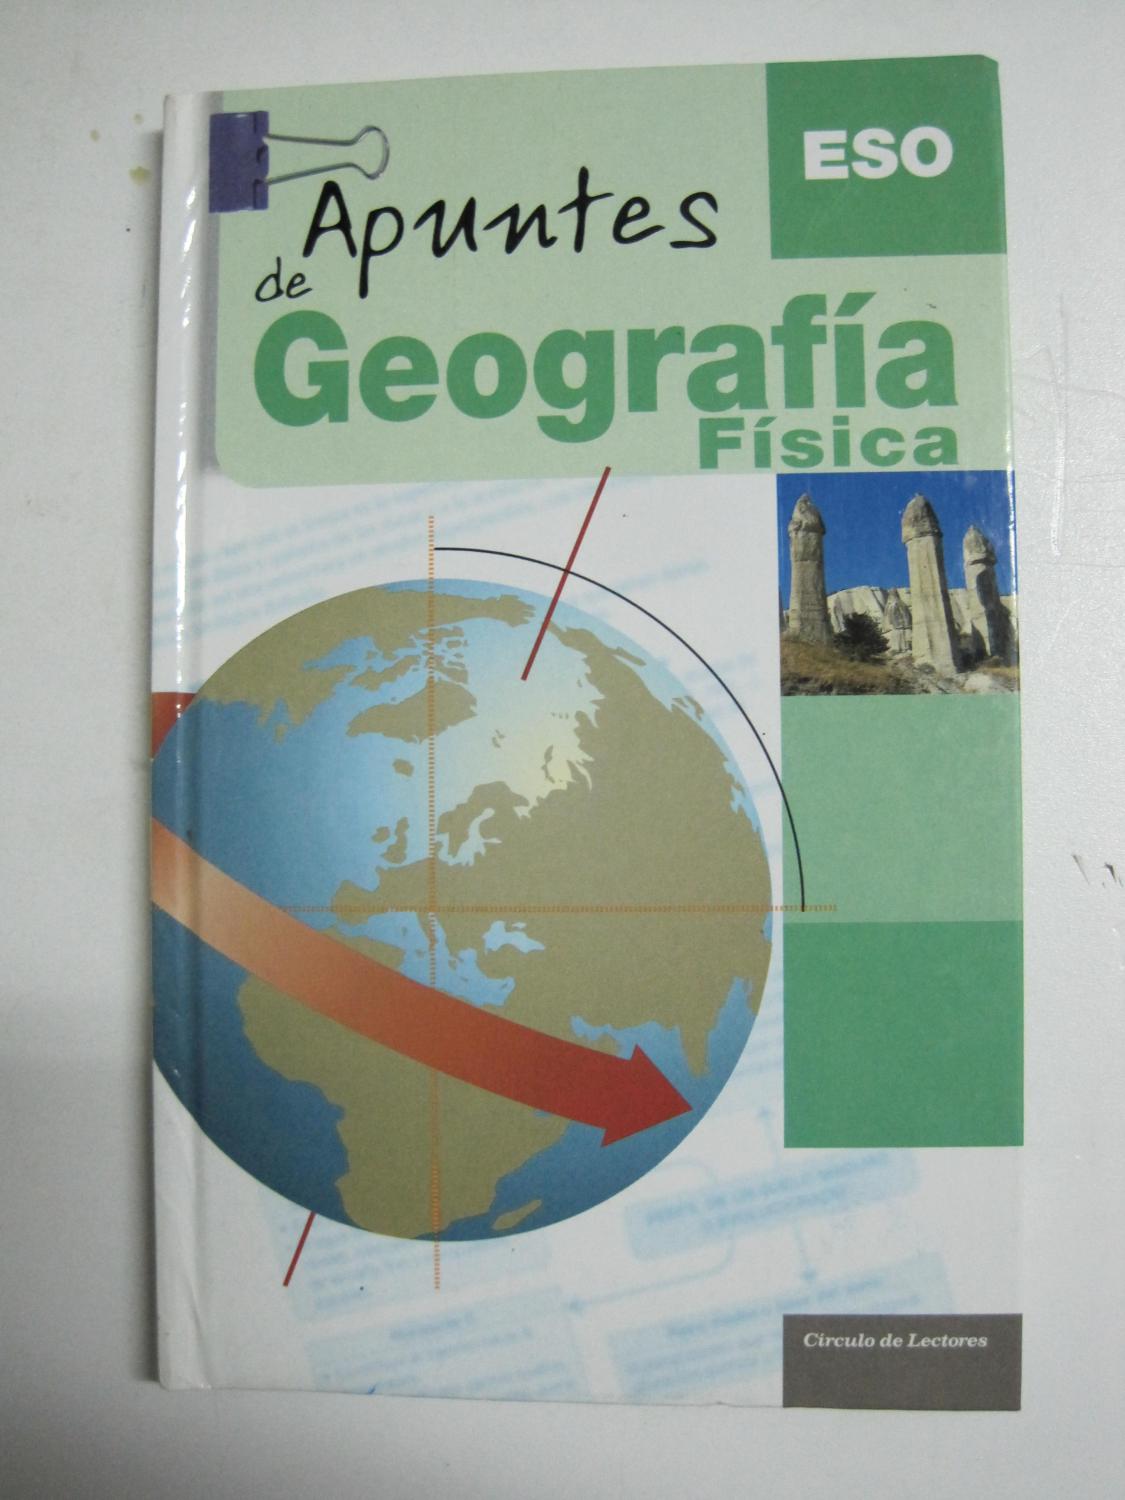 Apuntes de geografia y fisica, ESO - Banqueri Forns-Samsó, Eduardo